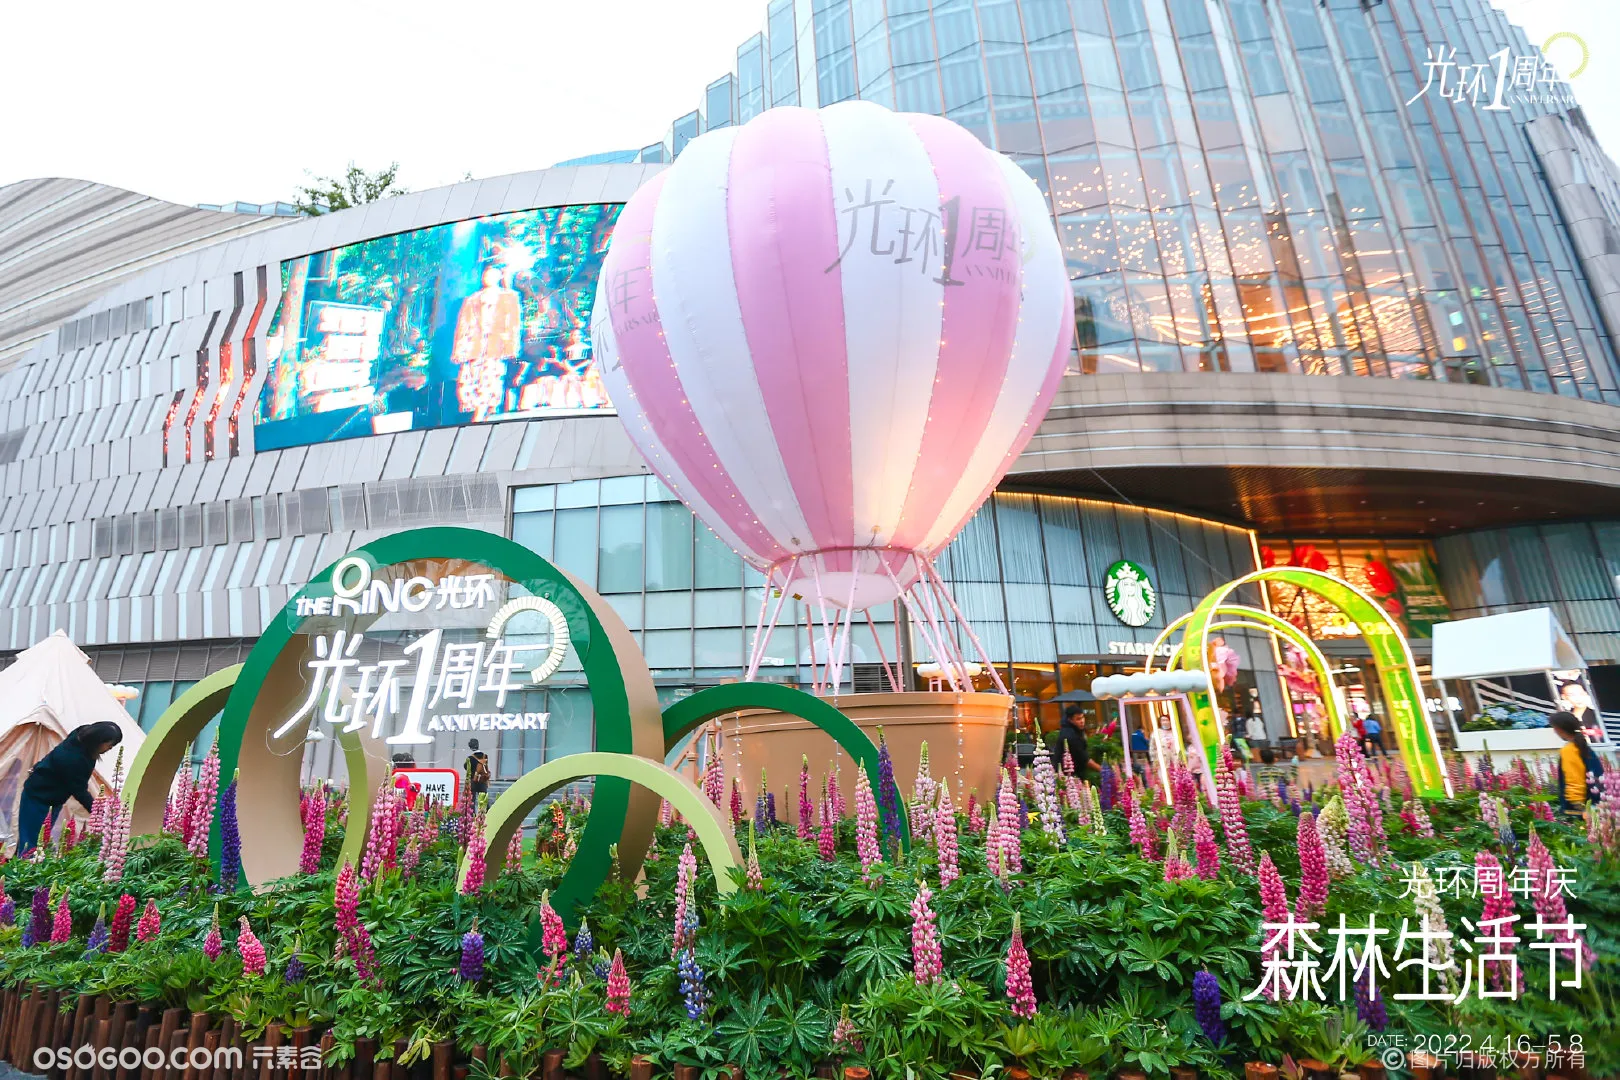 重庆光环一周年“森林生活节” 